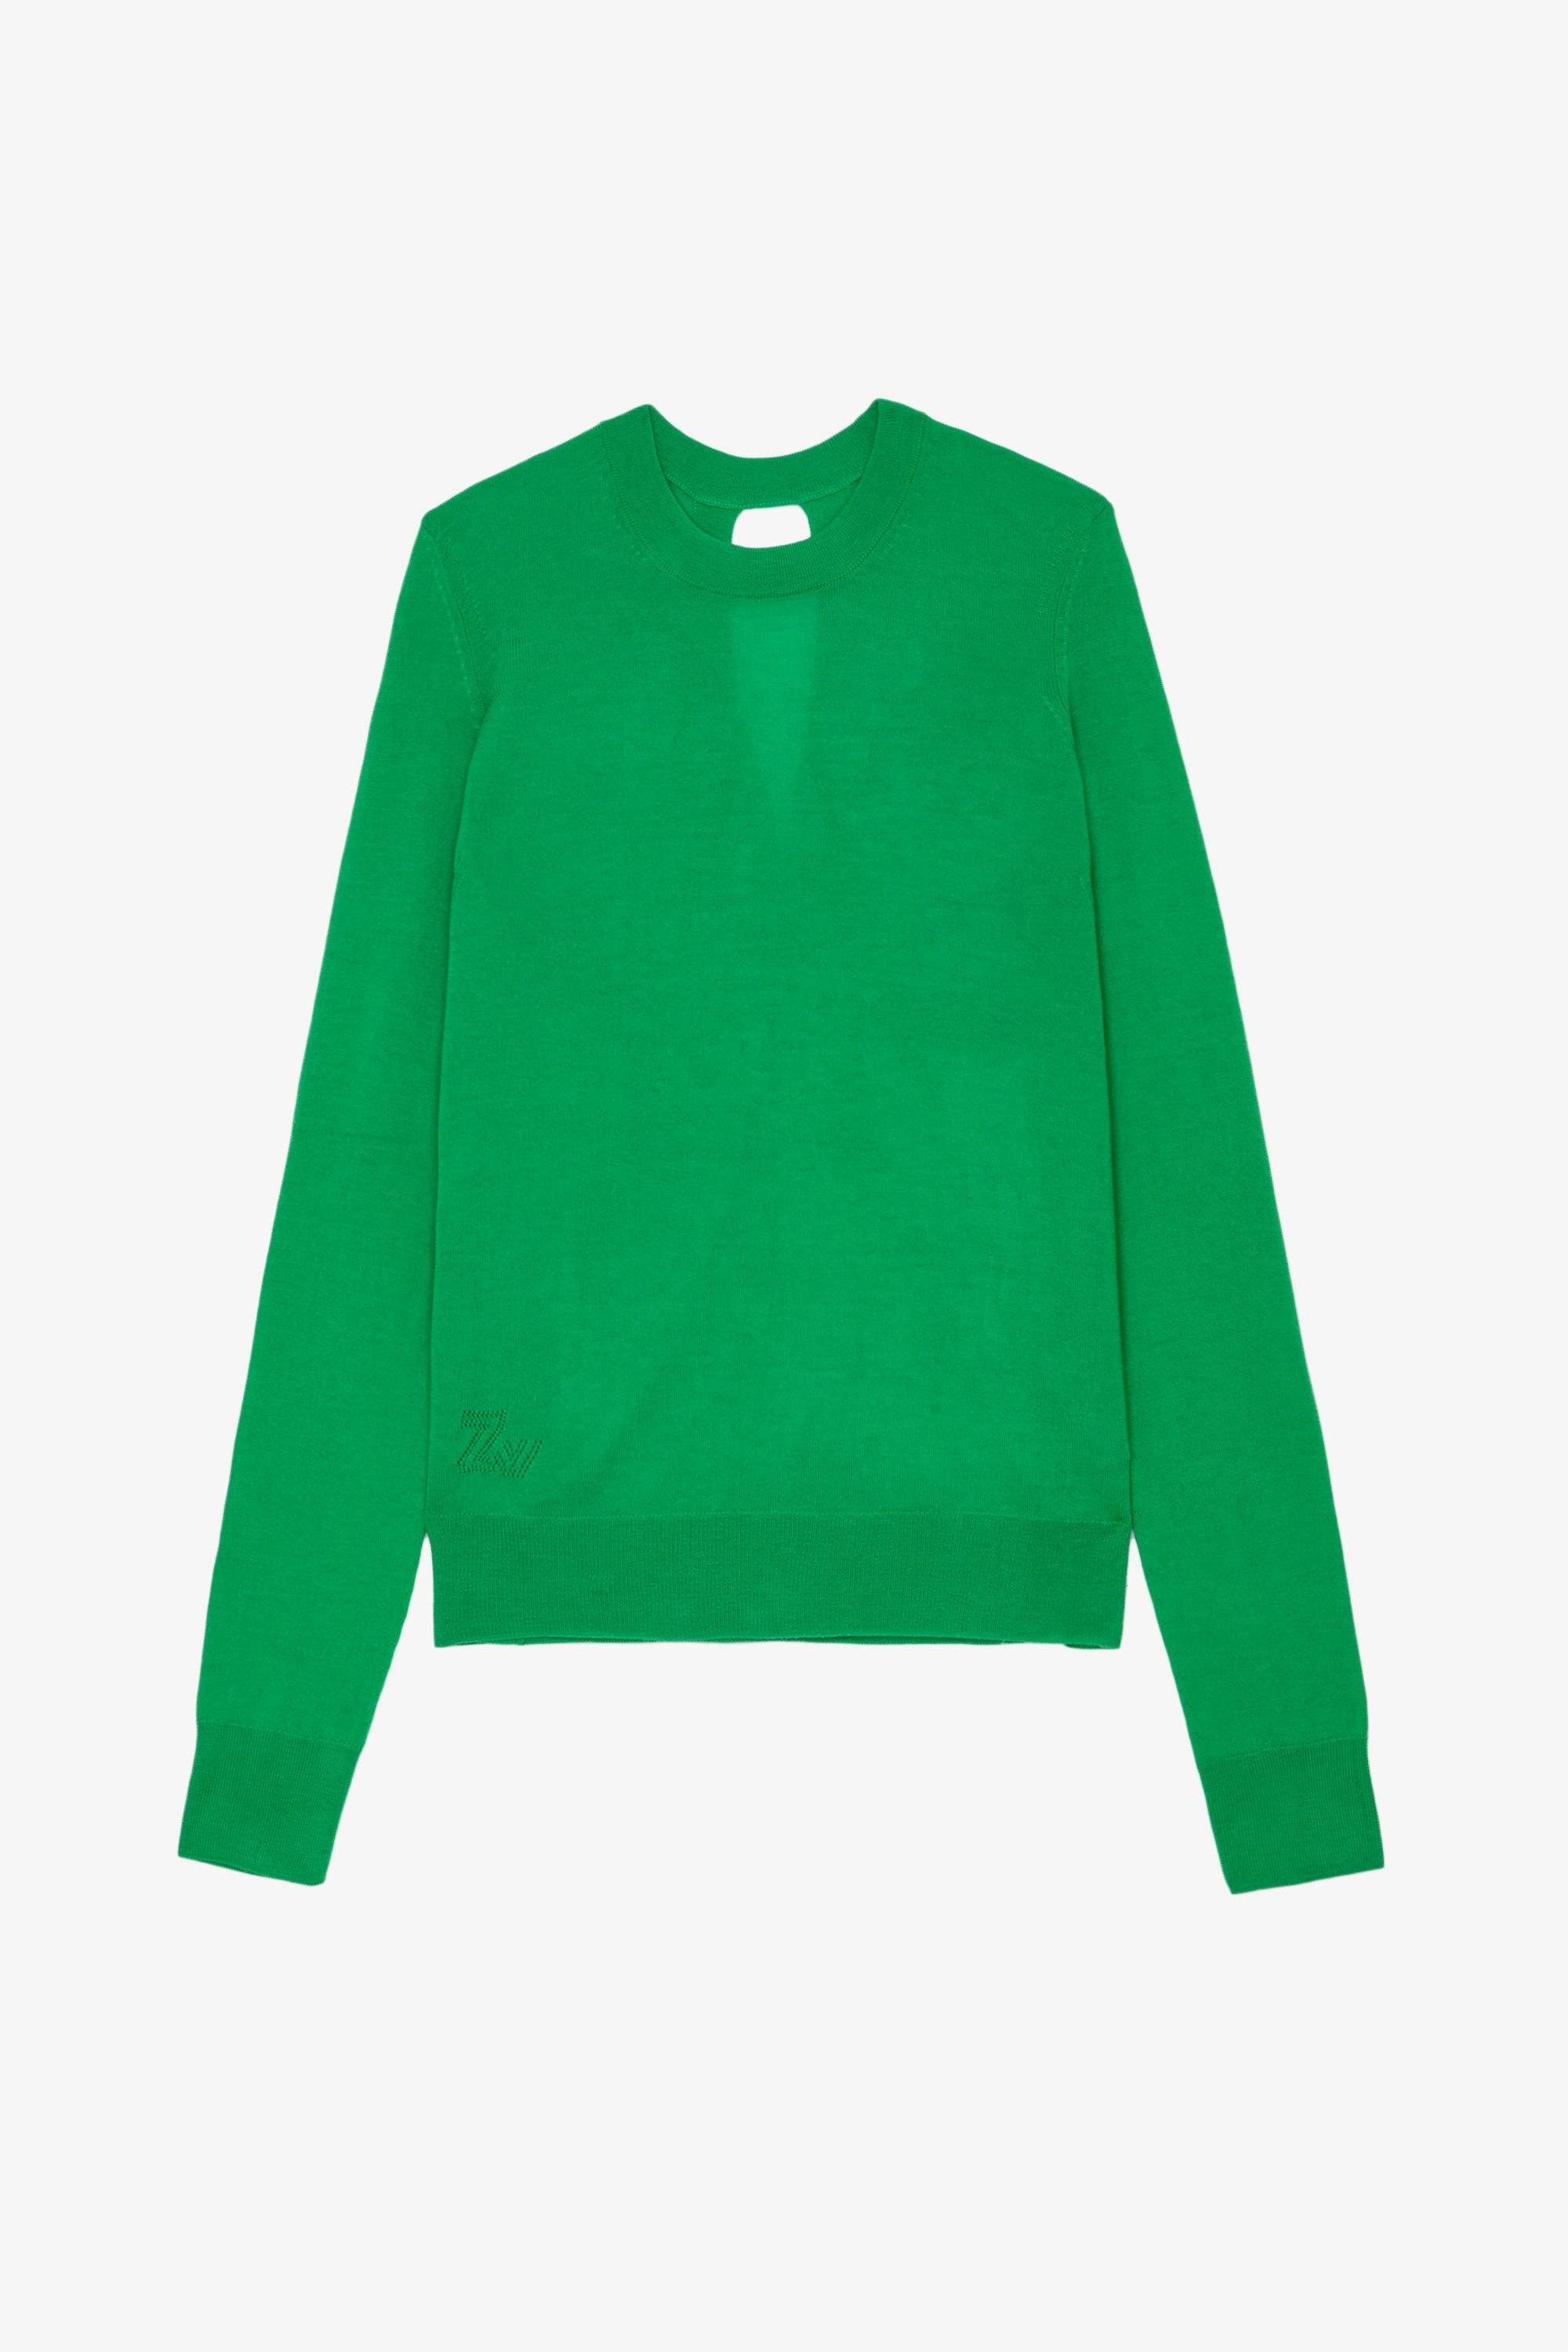 Jersey Emma Jersey de punto de lana merina verde con cuello redondo y mangas largas con apertura en la espalda para mujer